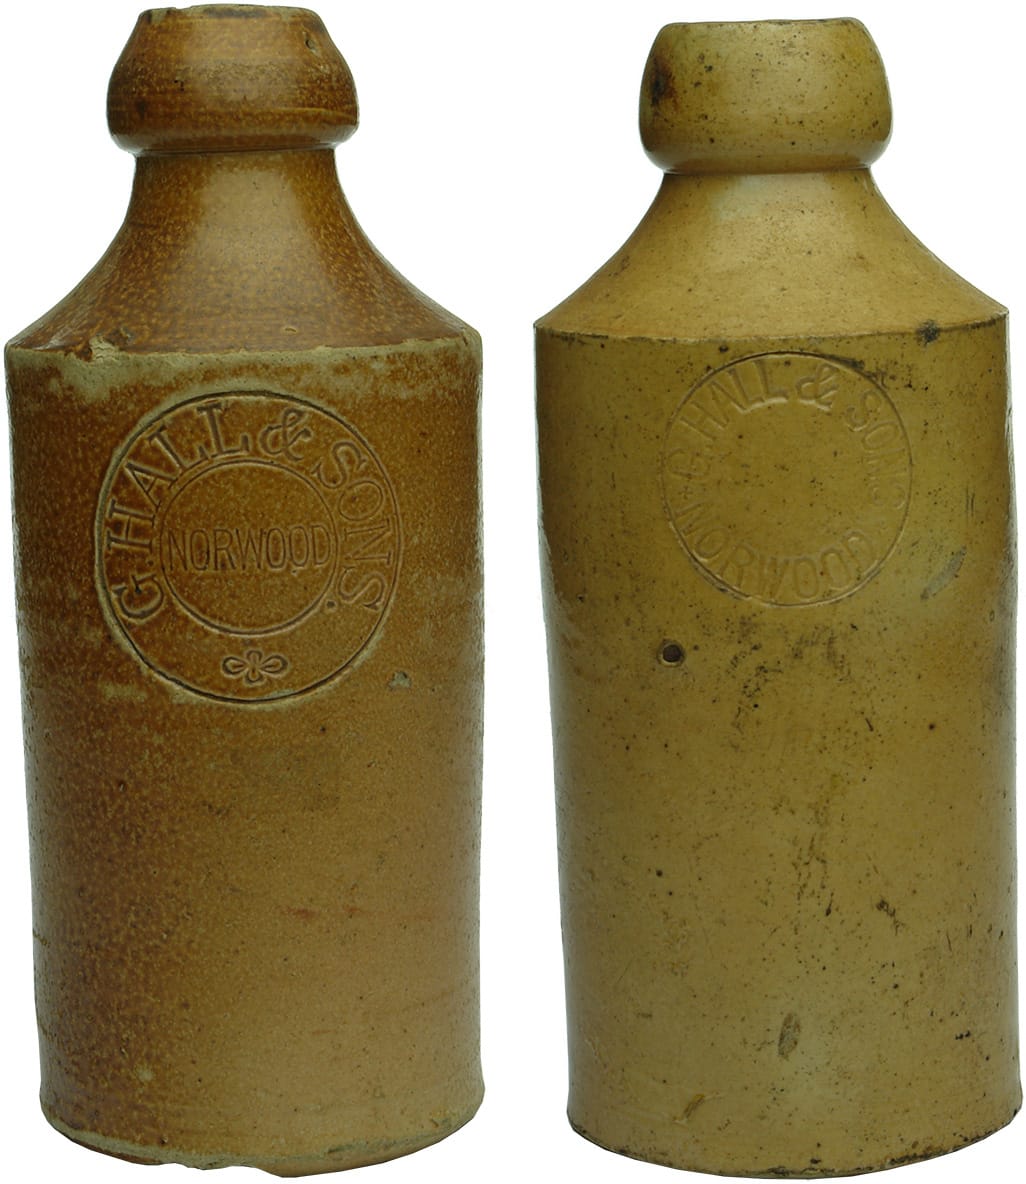 Hall Norwood Impressed Stoneware Ginger Beer Bottles